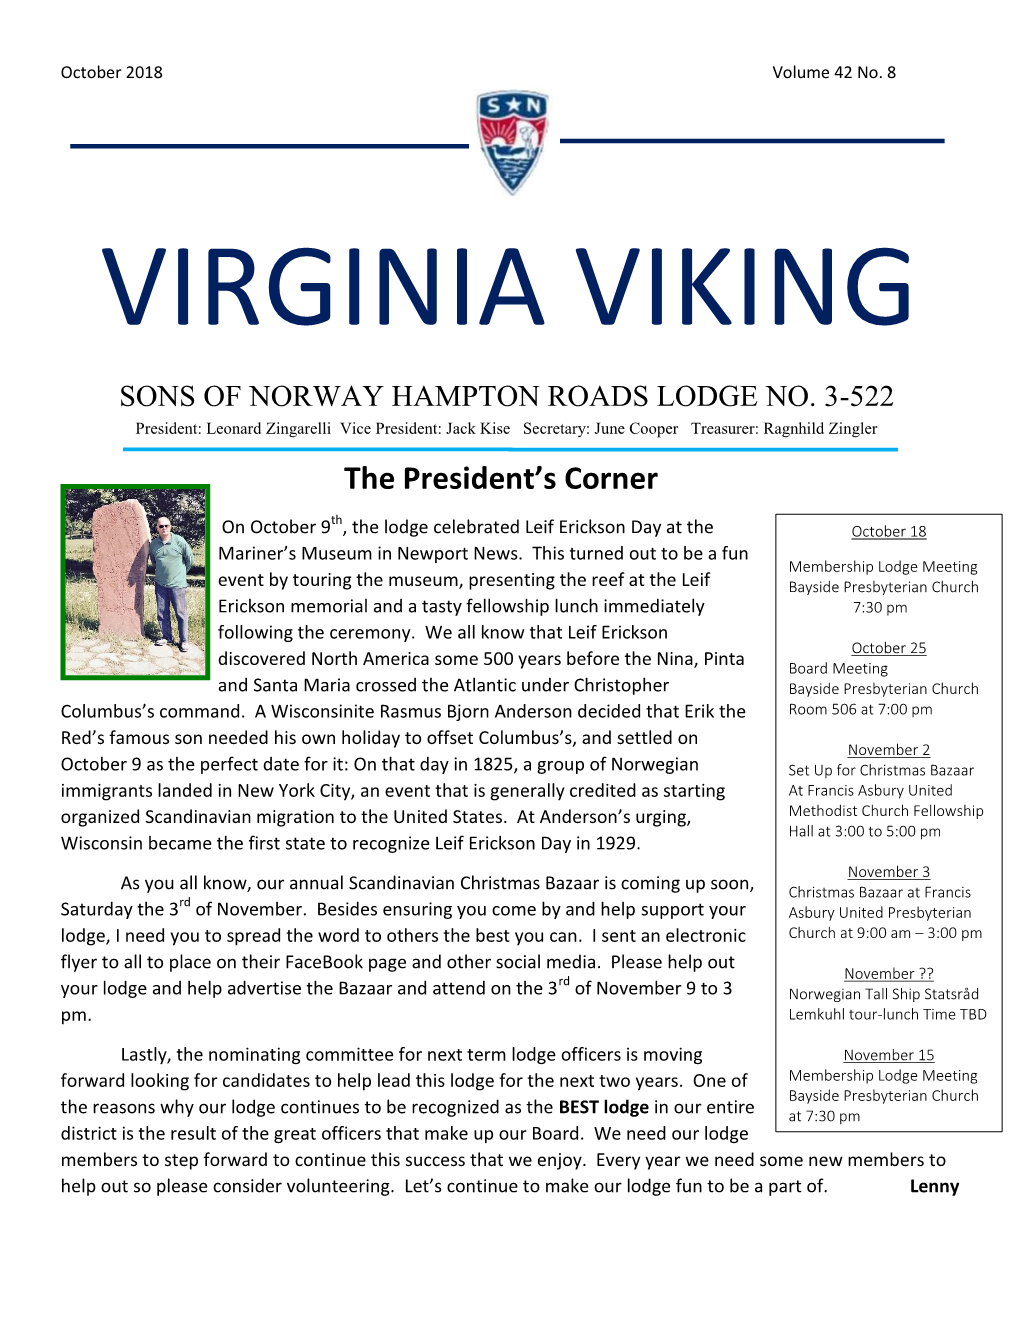 Virginia Viking October 2018